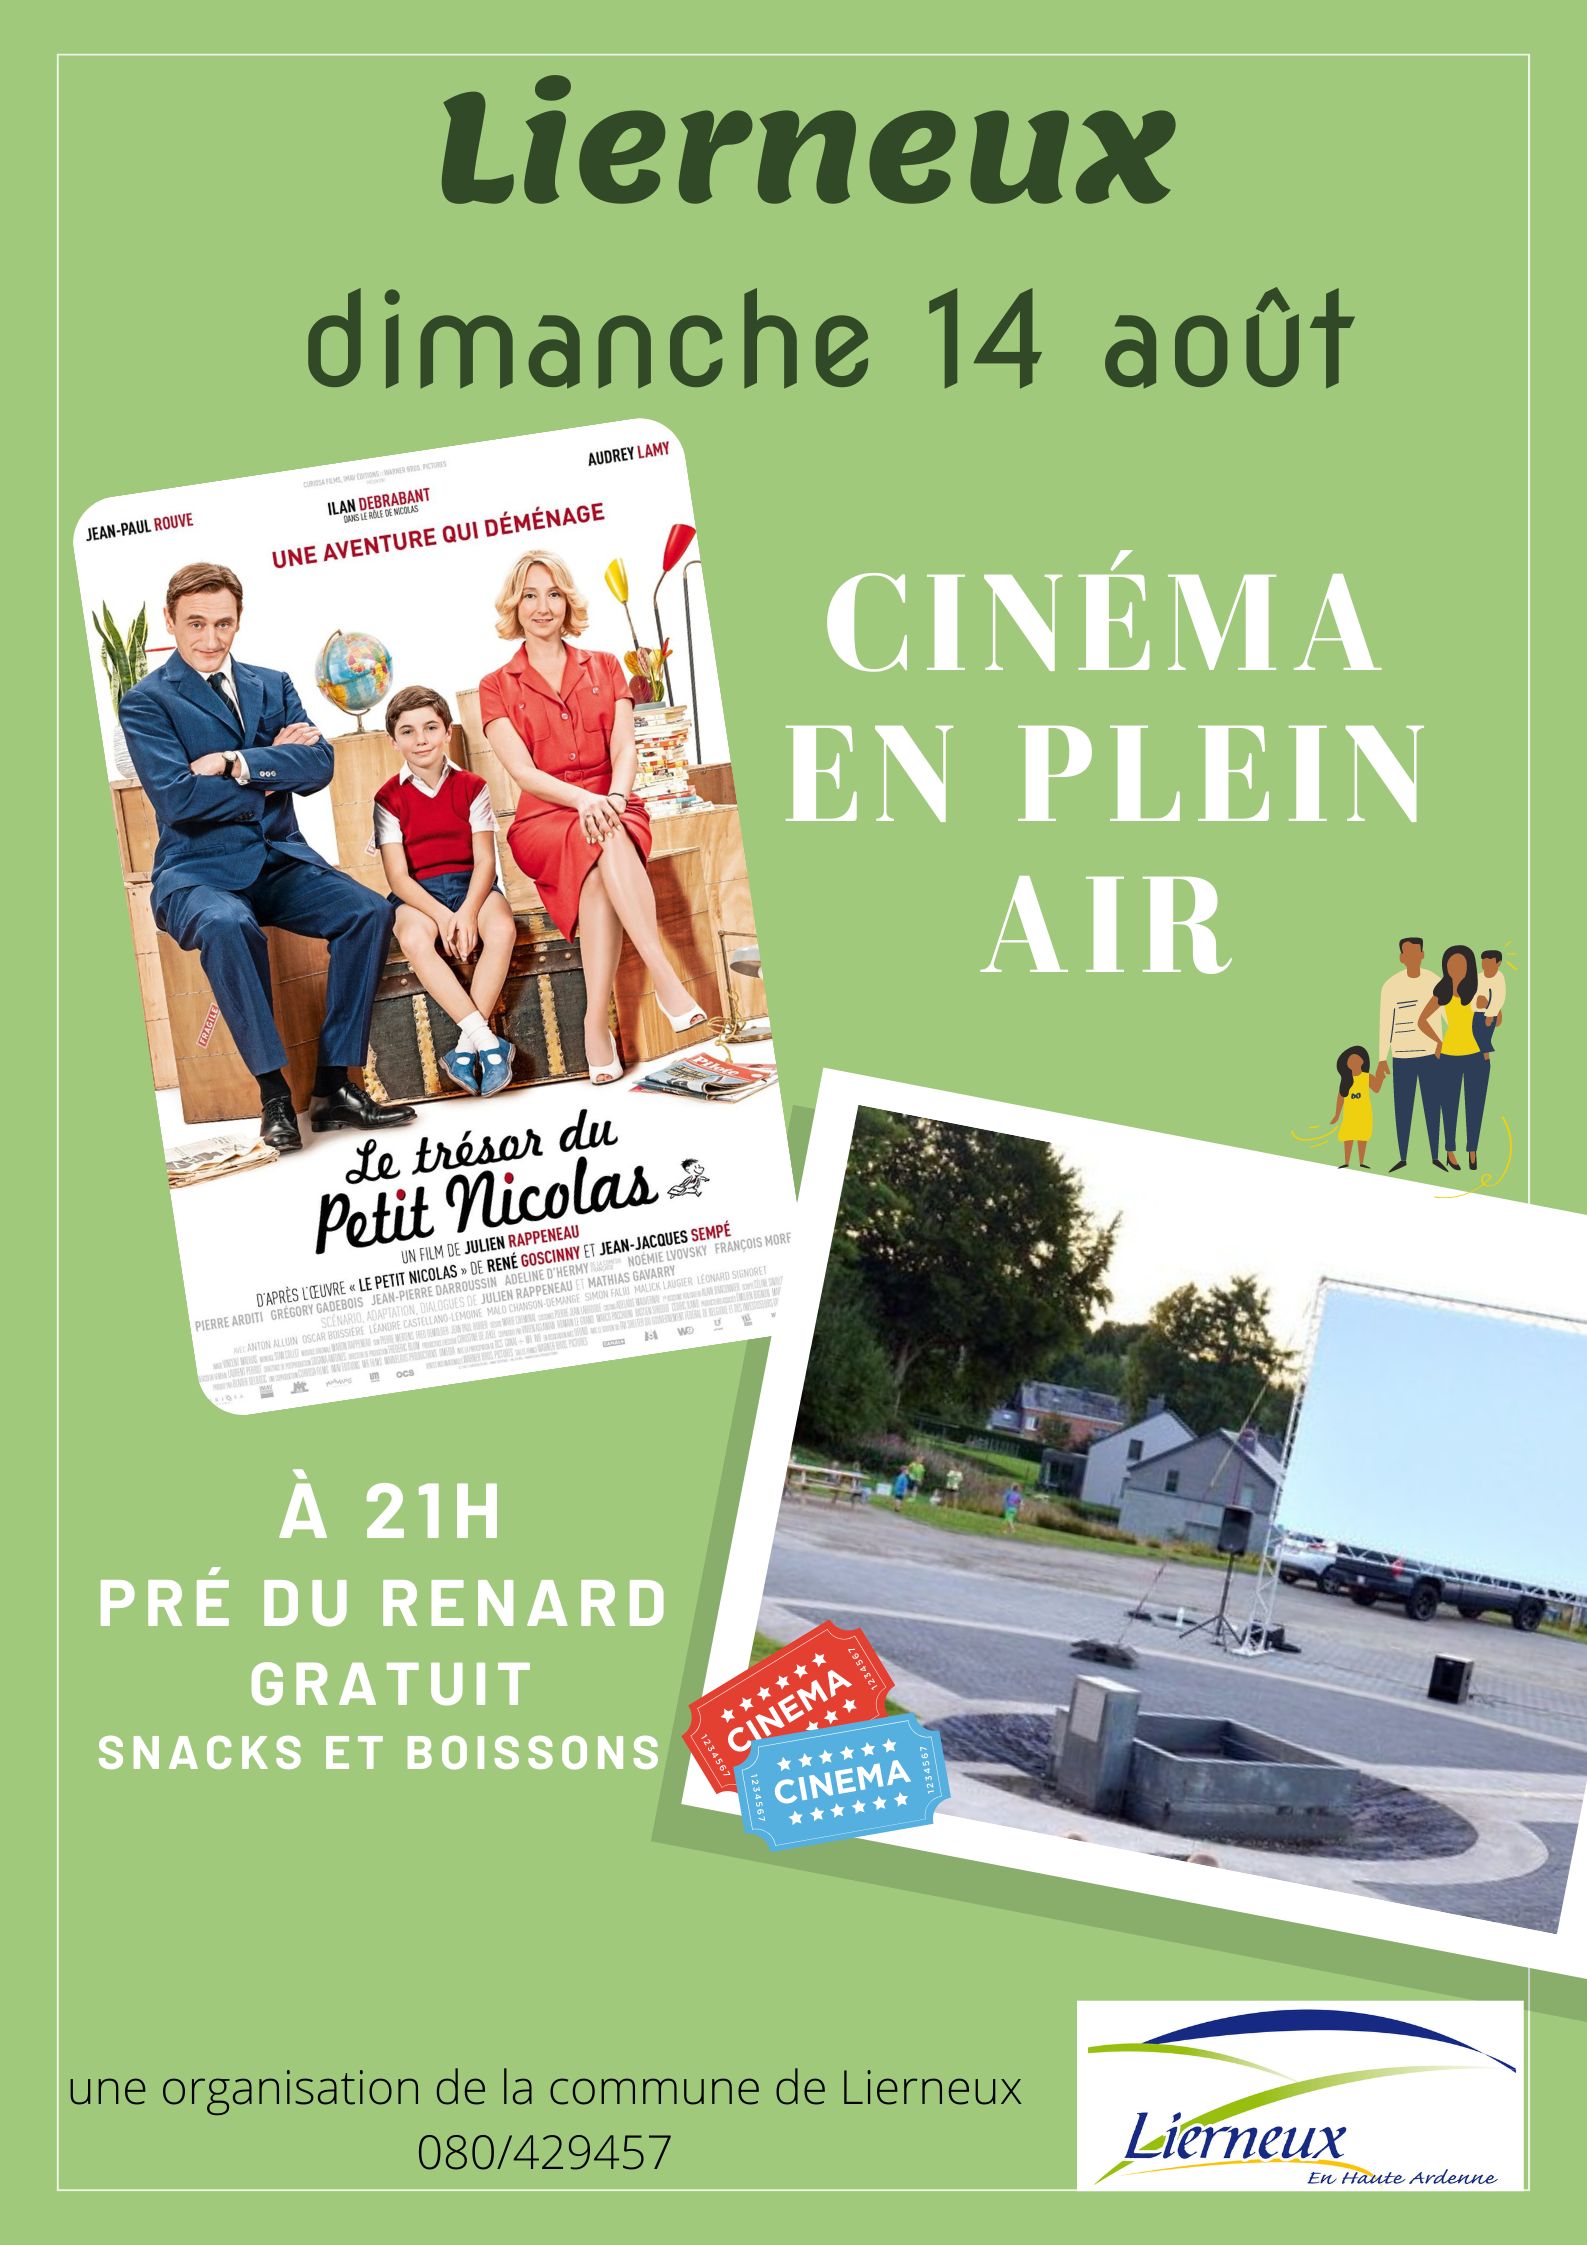 Cinéma en plein air Lierneux